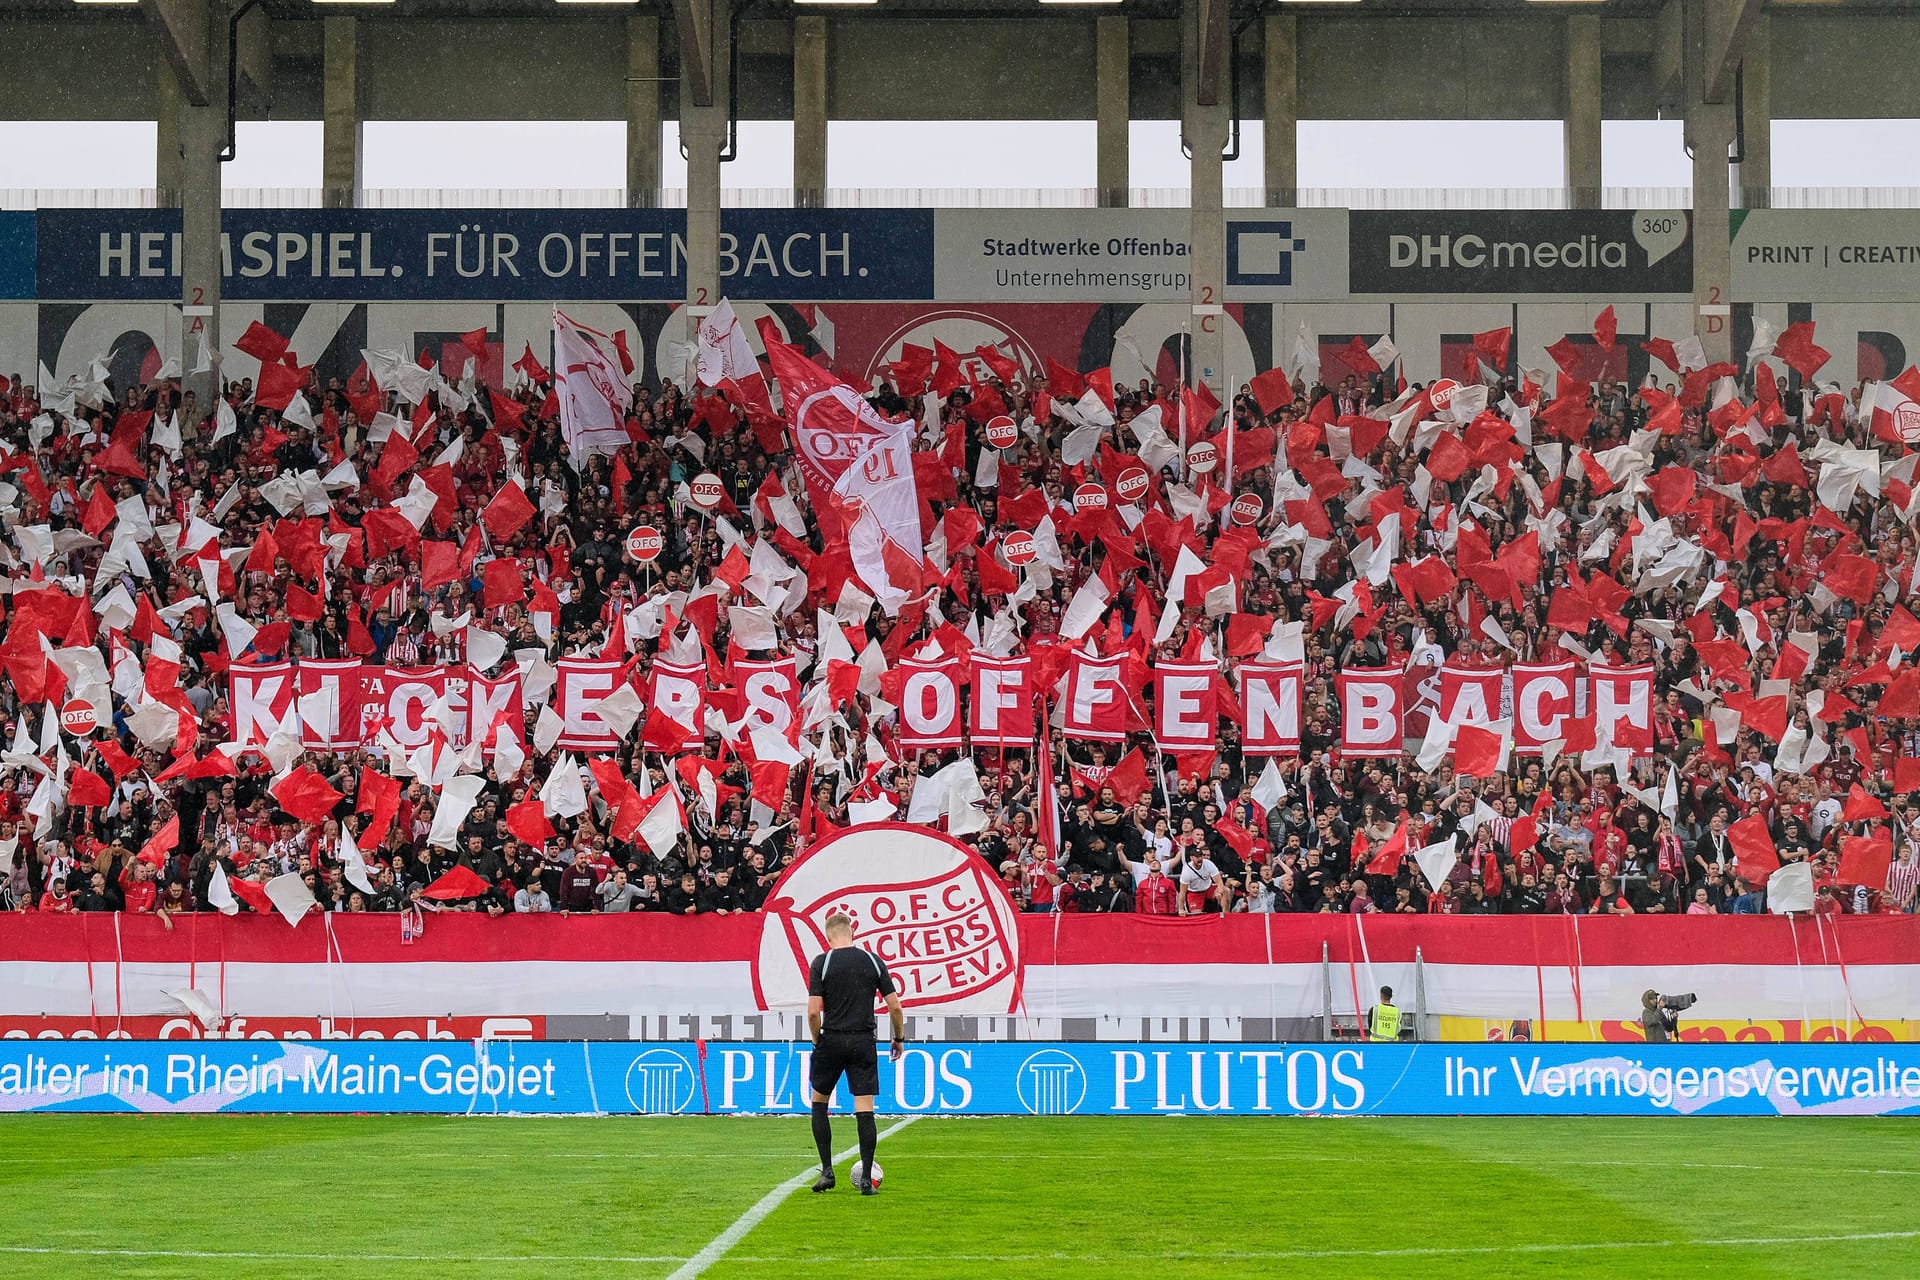 Choreo der Fans von Kickers Offenbach beim Auftaktspiel der neuen Saison gegen die Stuttgarter Kickers.